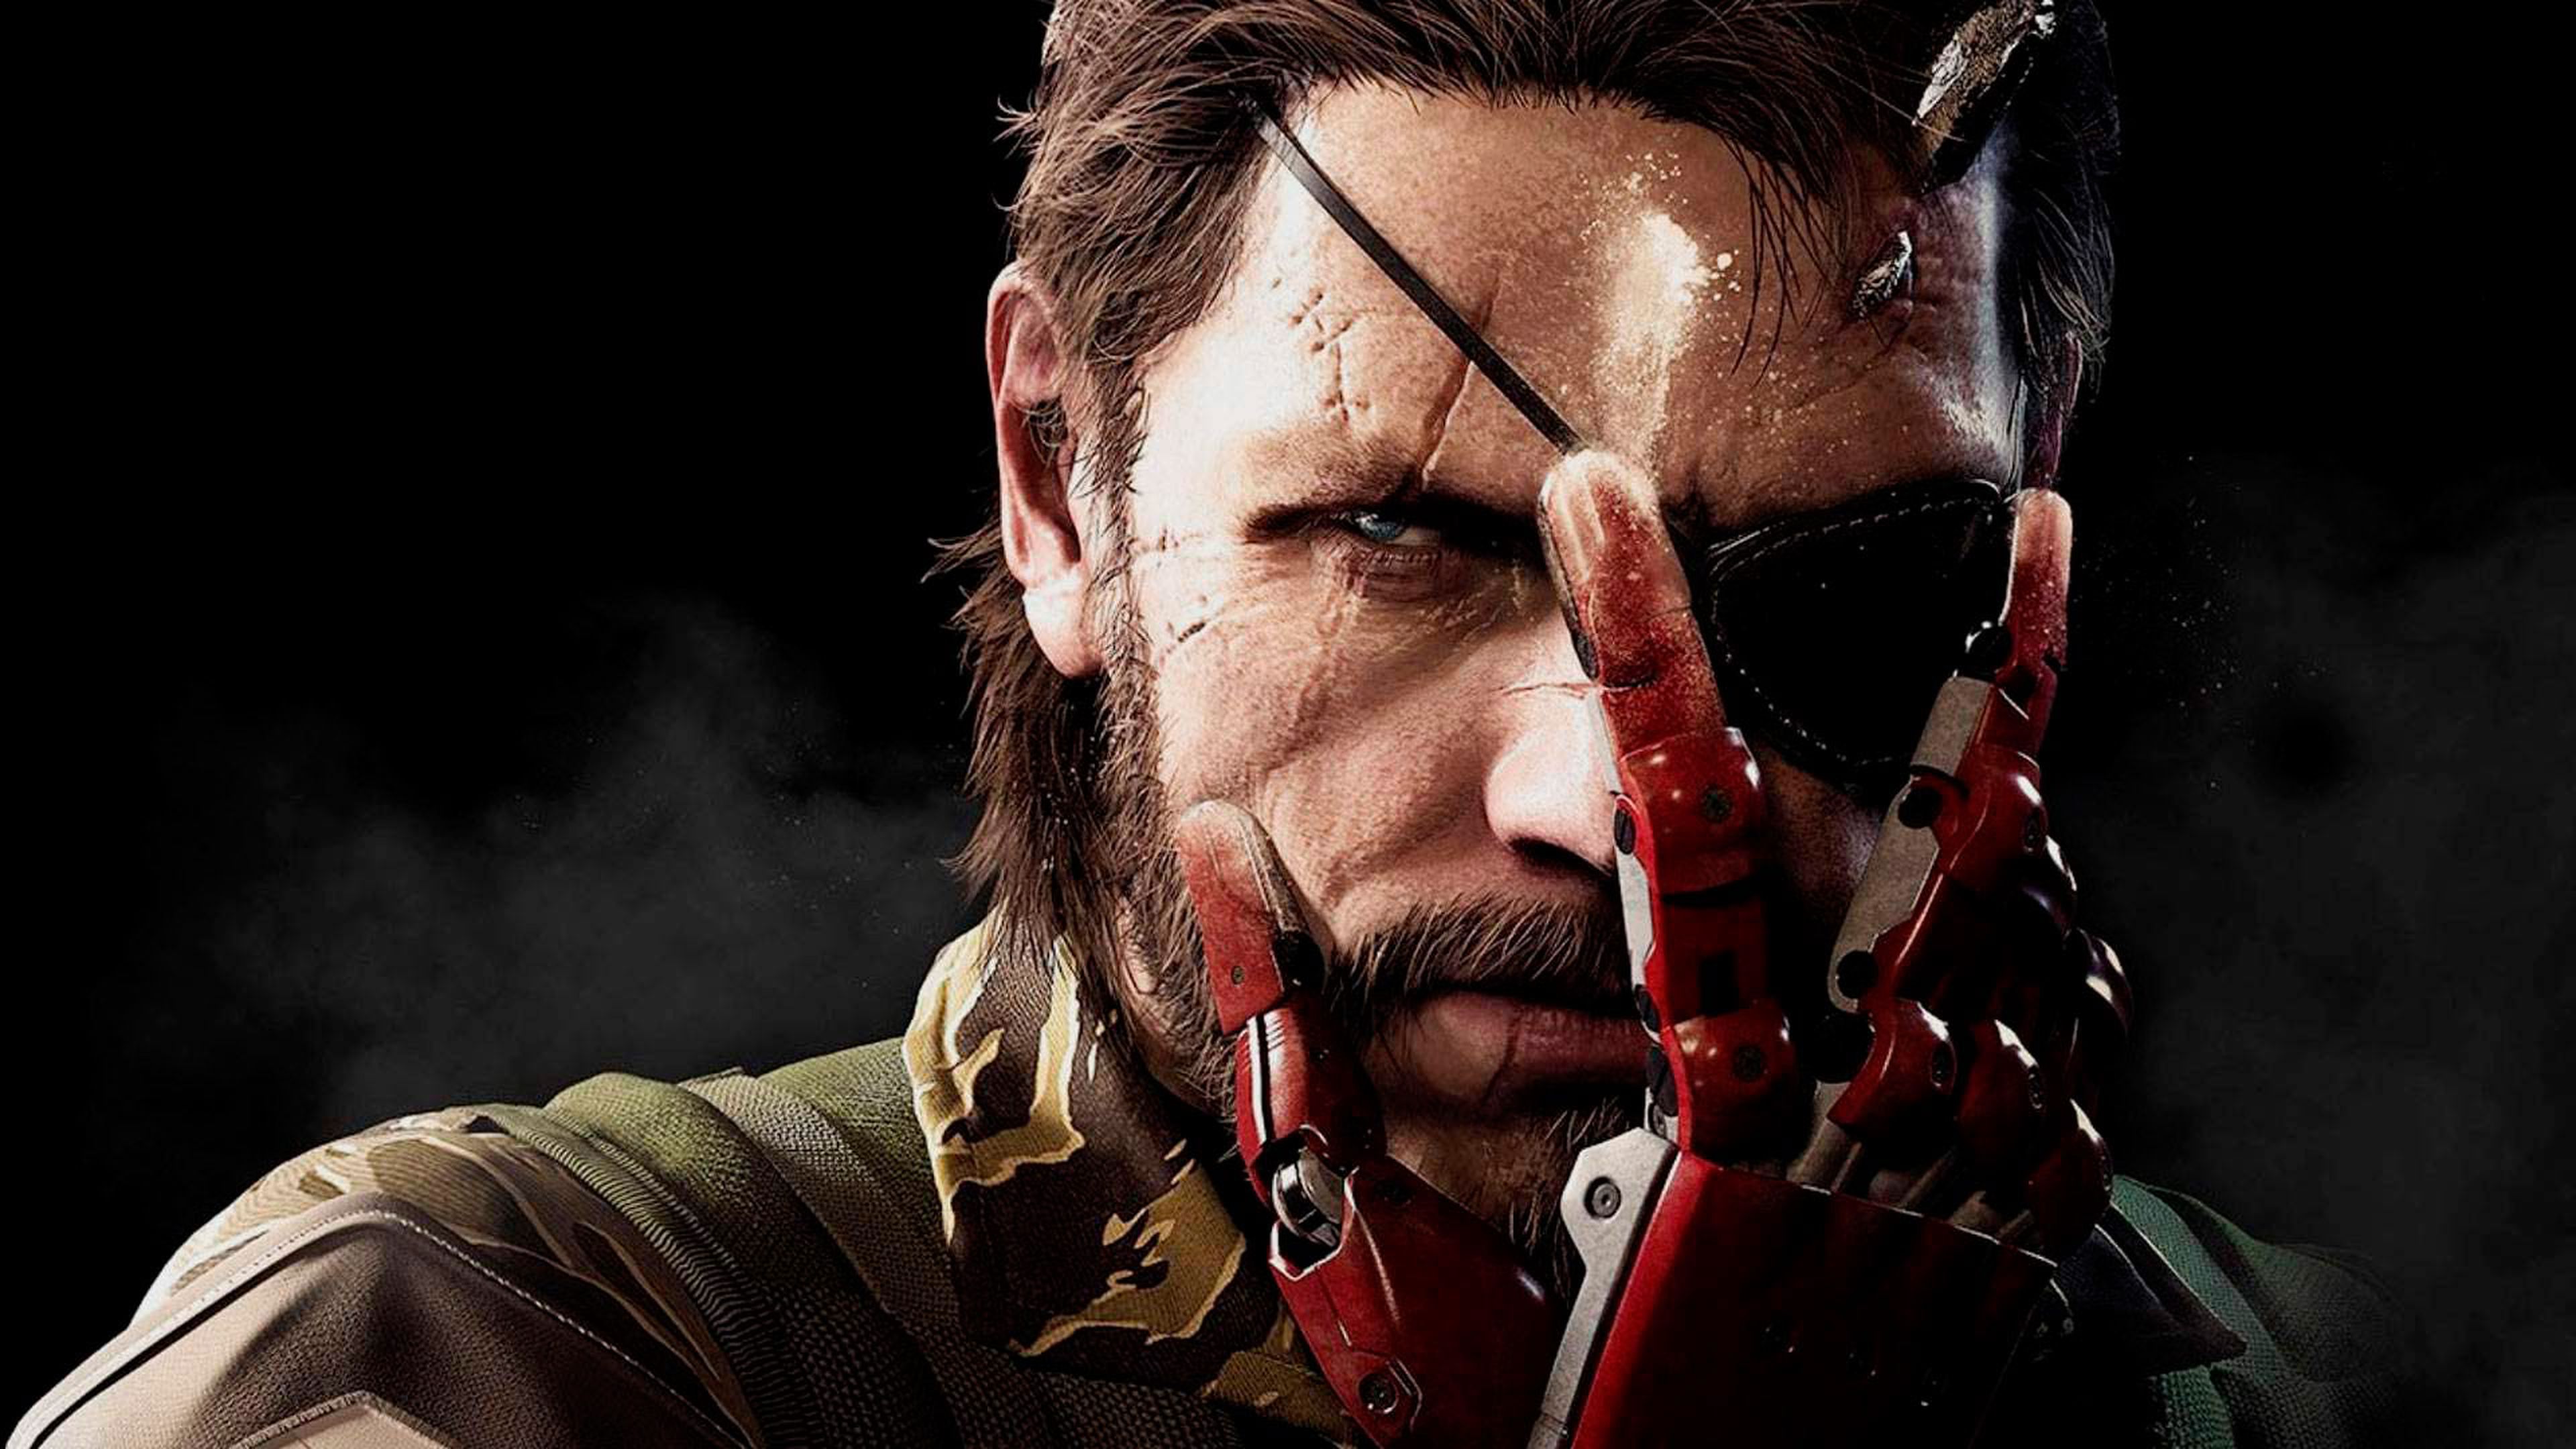 Metal Gear Solid V ha sido el doble de rentable que la última película de Los Vengadores, comparando ambos productos en su primer día de estreno.